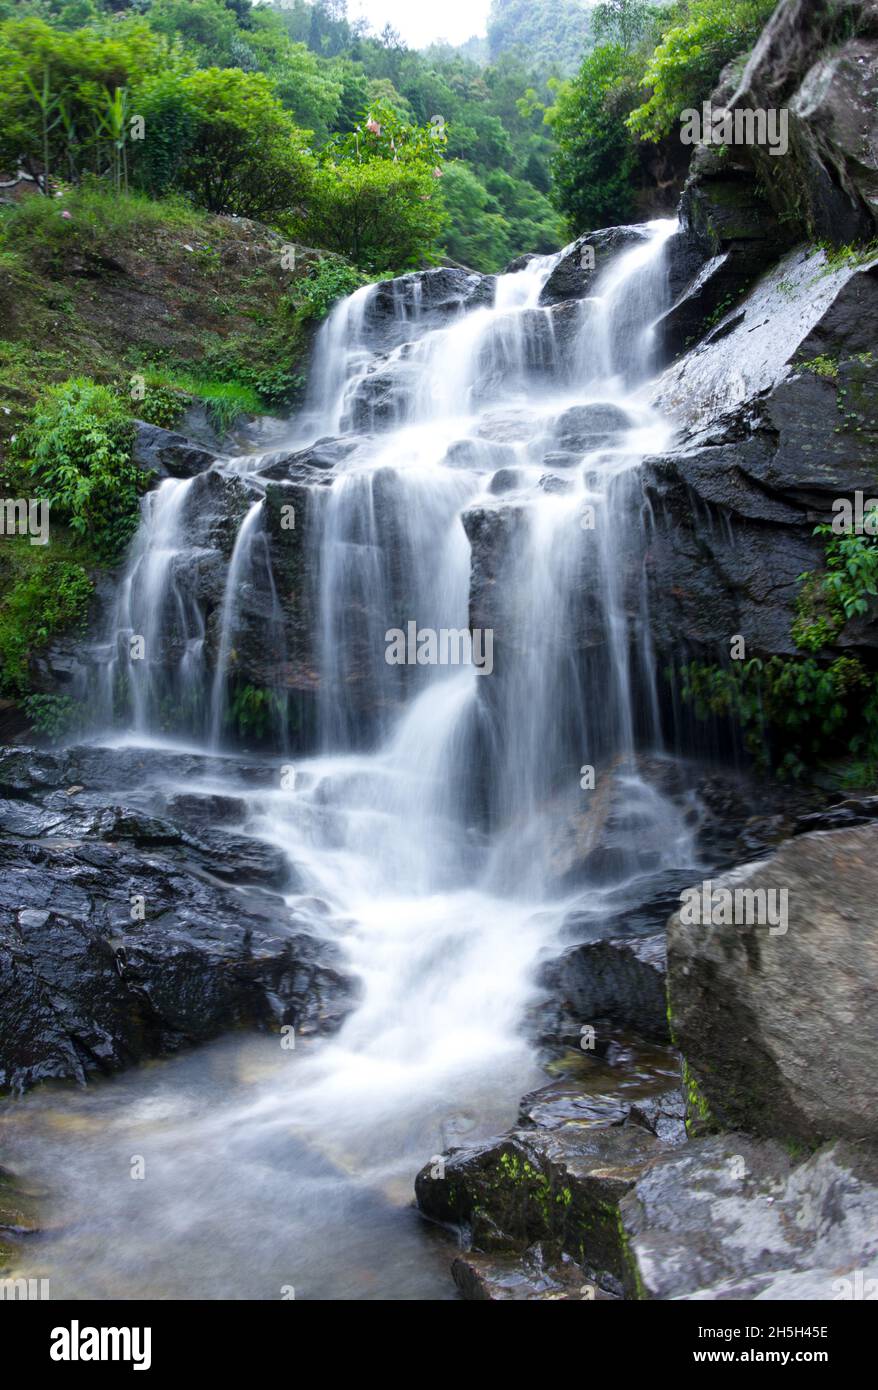 Darjeeling Rock Garden Waterfall wallpaper Stock Photo